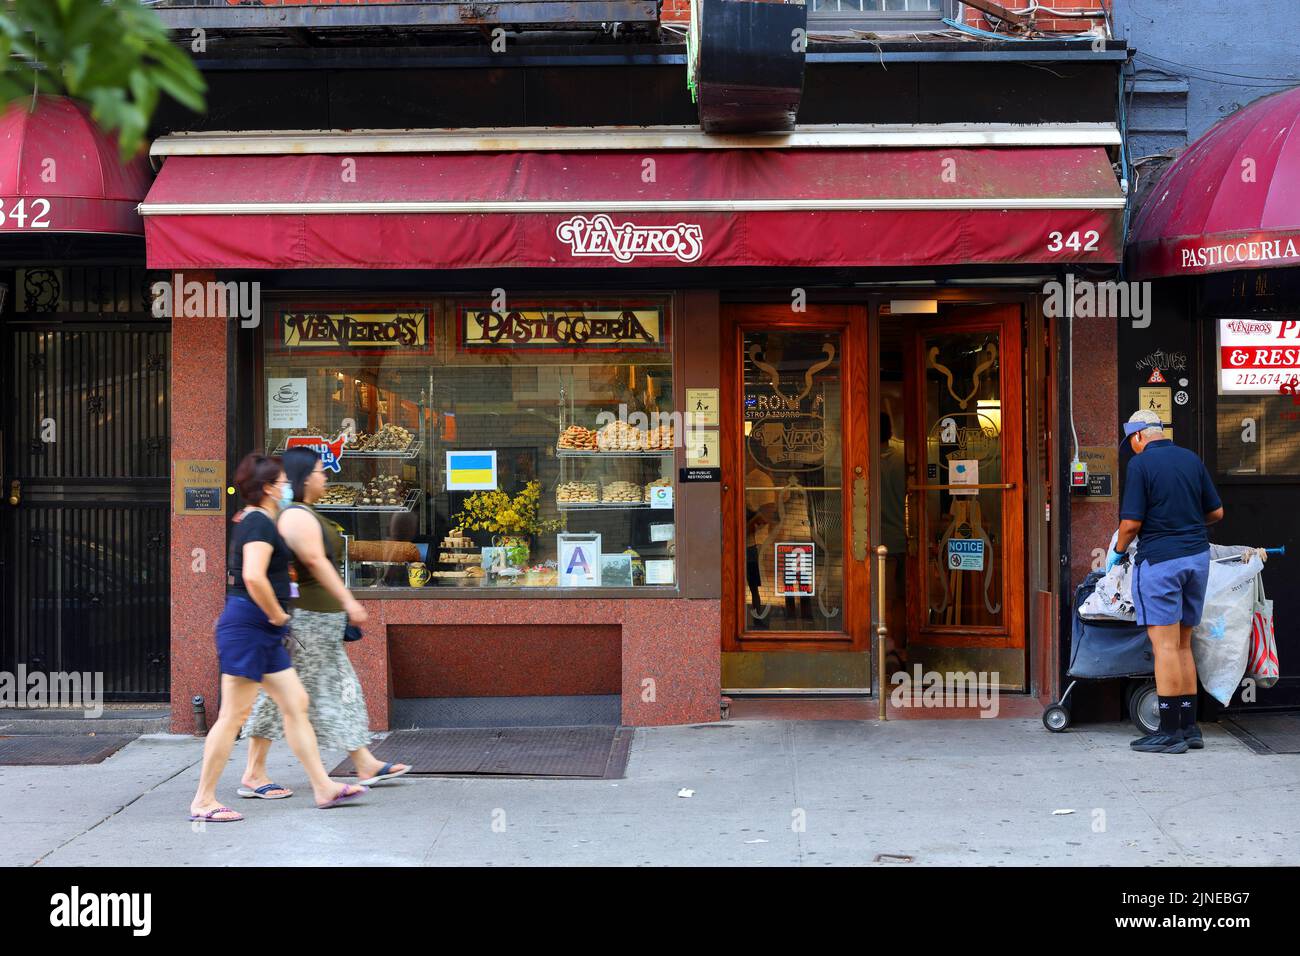 Veniero's Pasticceria, 342 E 11th St, Nueva York, Nueva York, Nueva York, Nueva York, foto del escaparate de una pastelería italiana y un café en el barrio East Village de Manhattan. Foto de stock